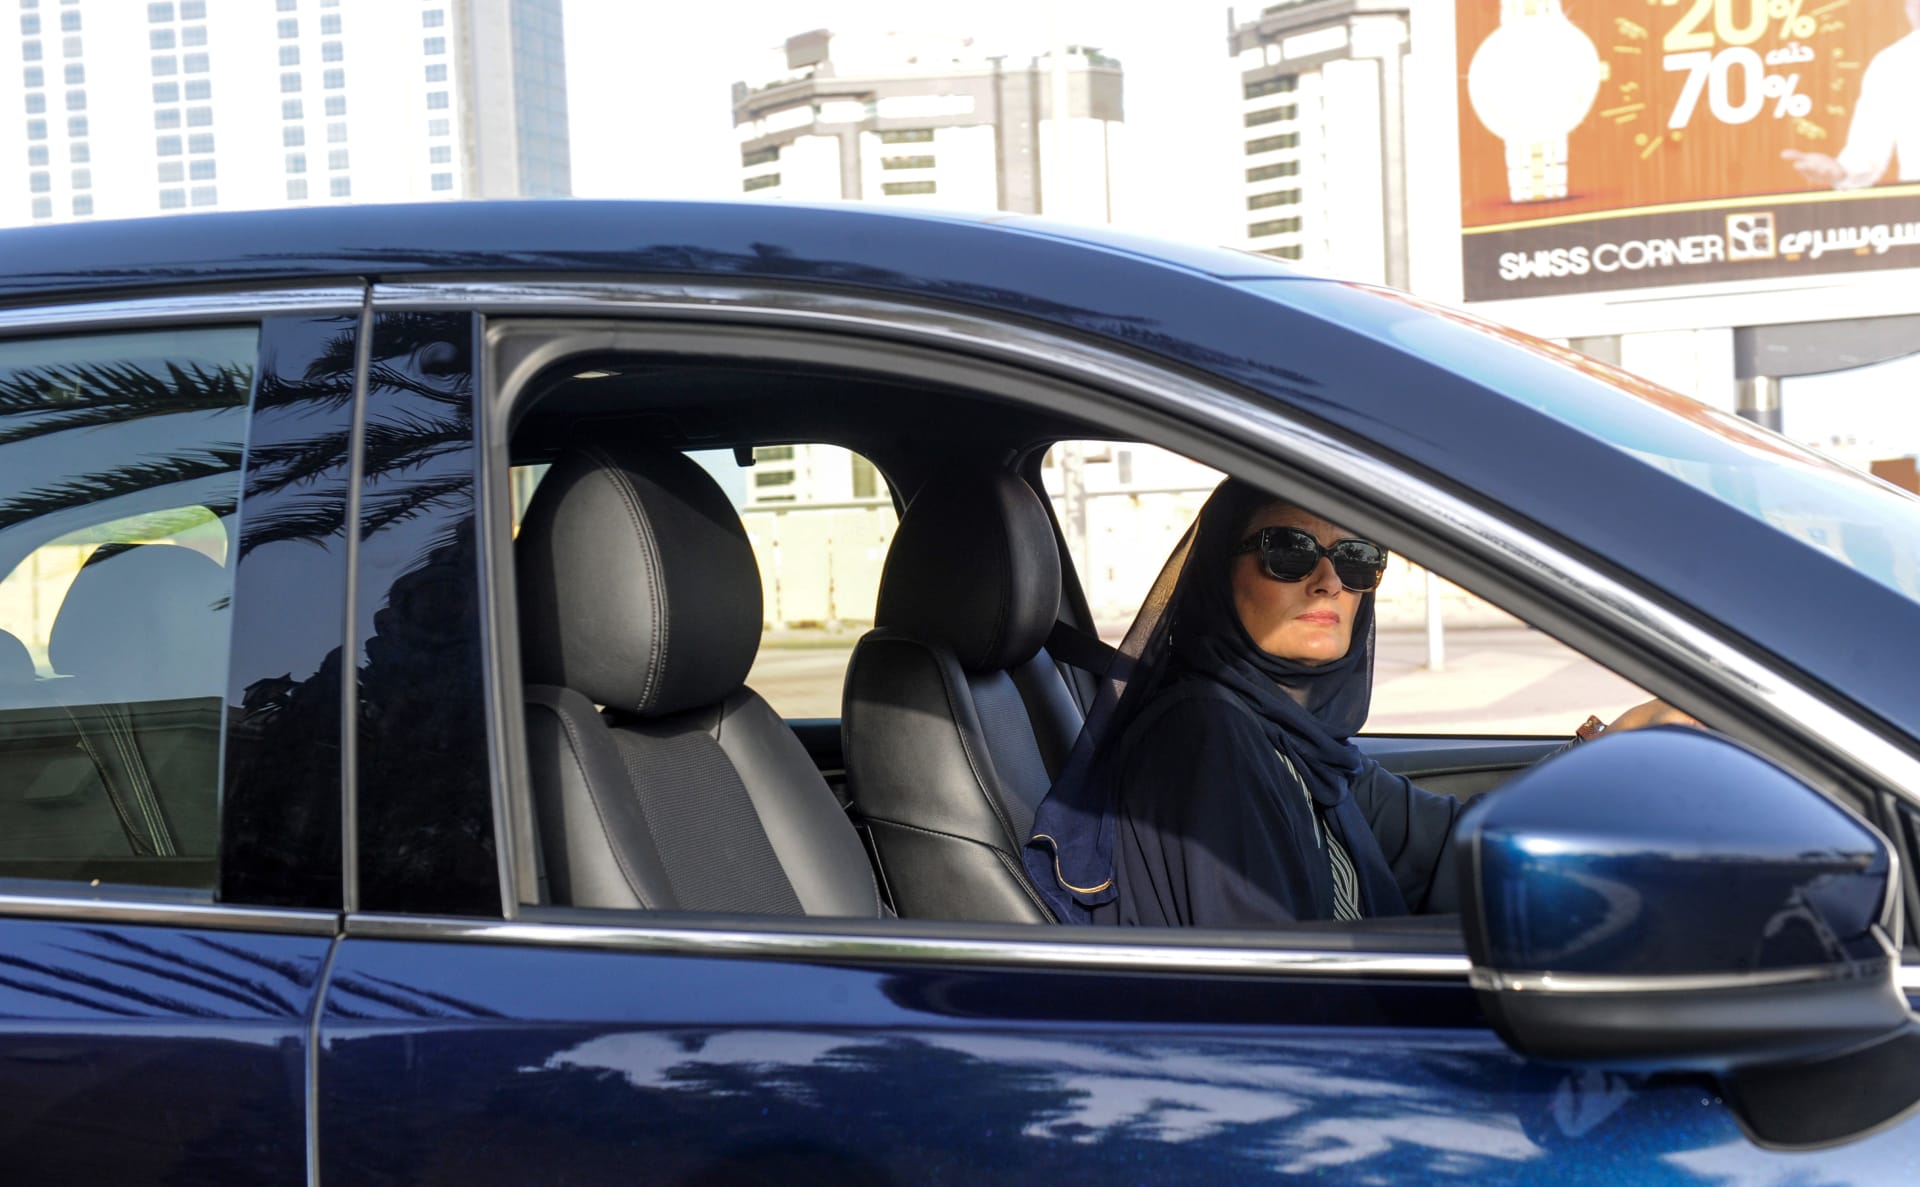  مدير عام المرور في السعودية: لا توجد مواقف خاصة بالنساء